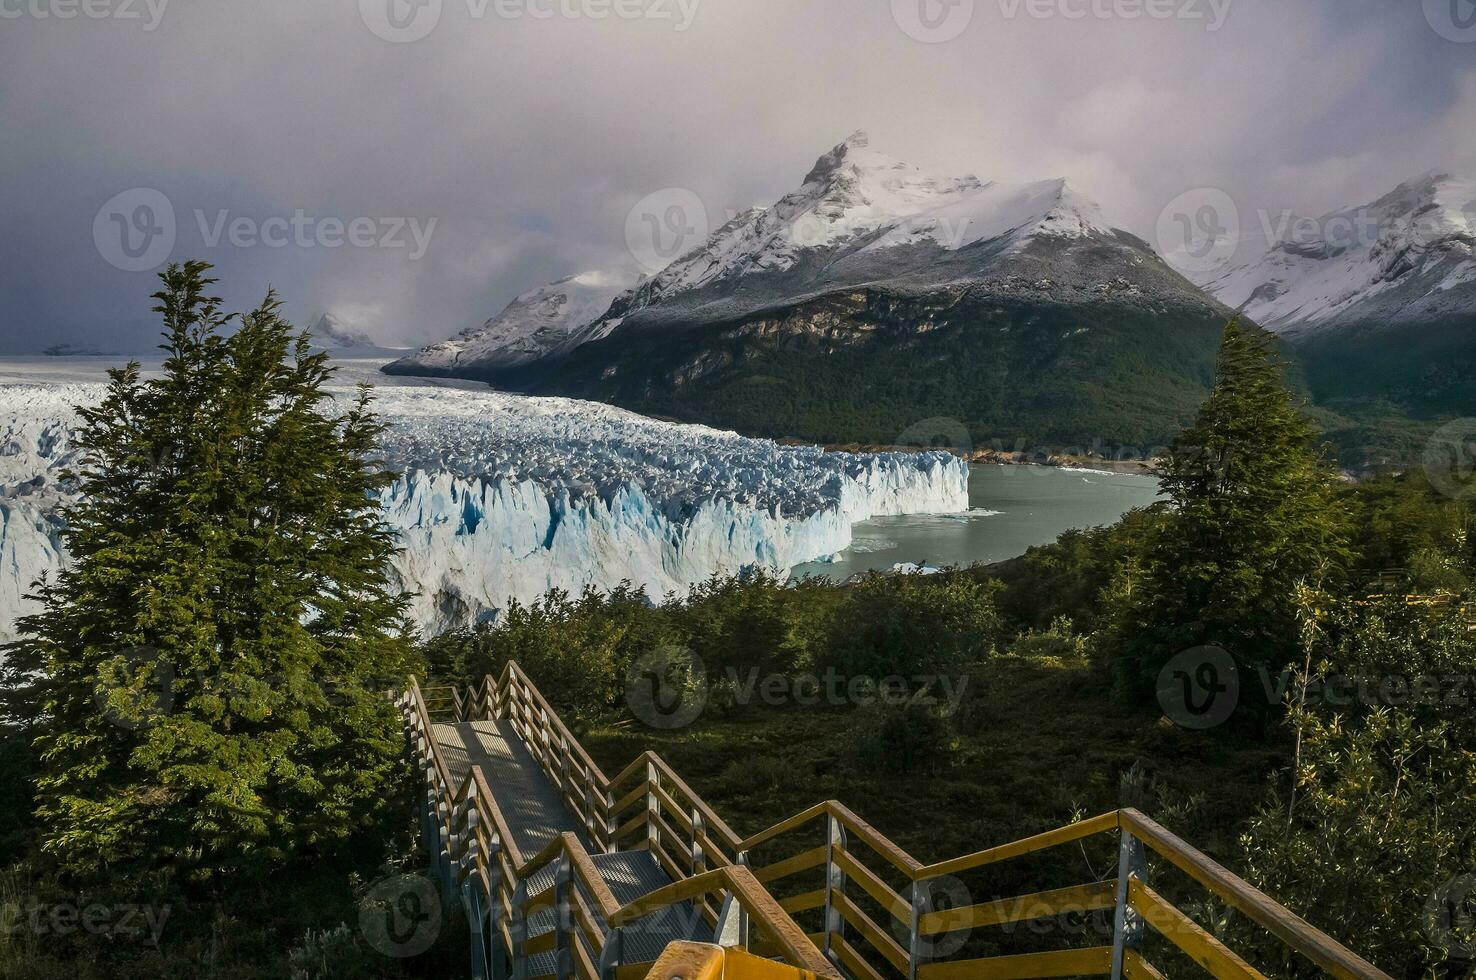 perito moreno glaciar, los glaciares nacional parque, Papa Noel cruz provincia, Patagonia argentina. foto